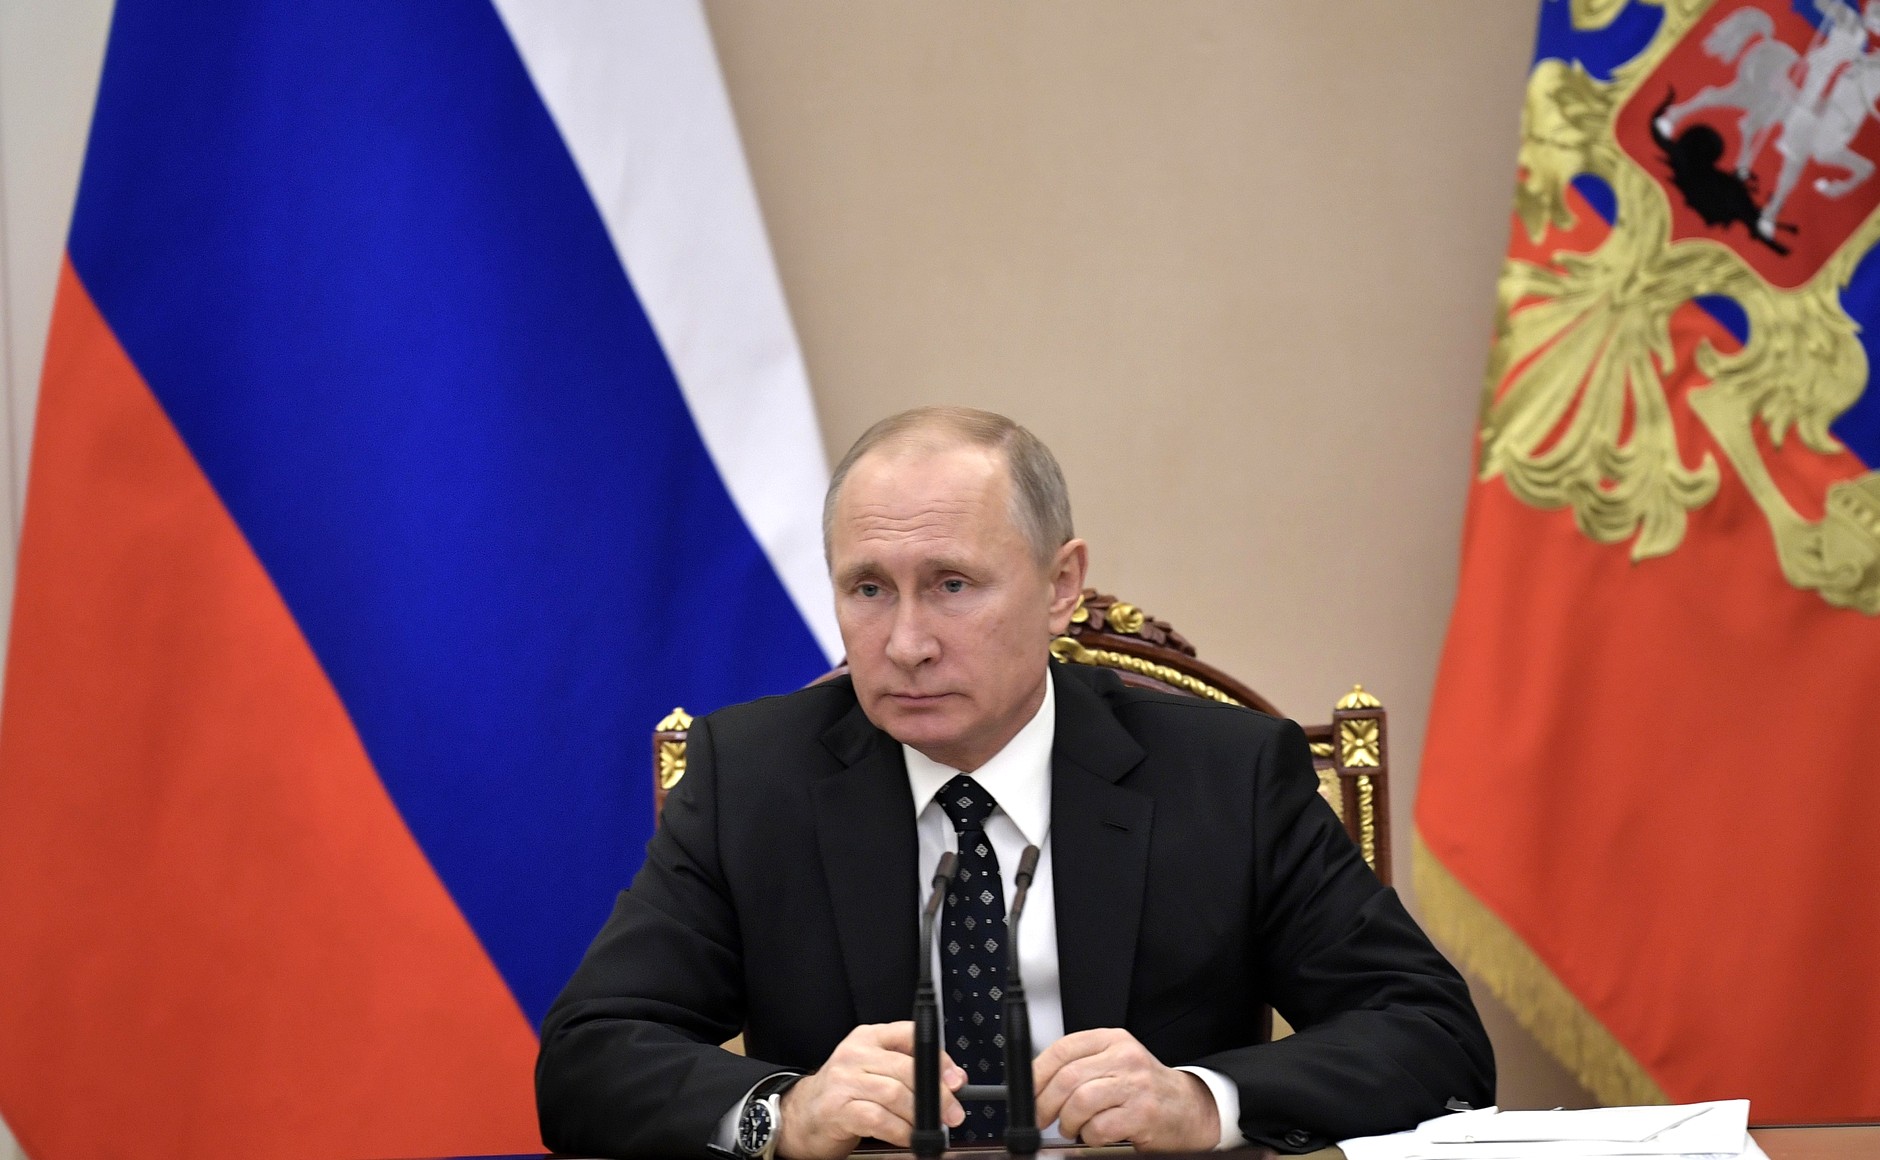 Ратификация соглашения должна обеспечить стабильность и безопасность в регионе Фото: © GLOBAL LOOK press/Kremlin Pool